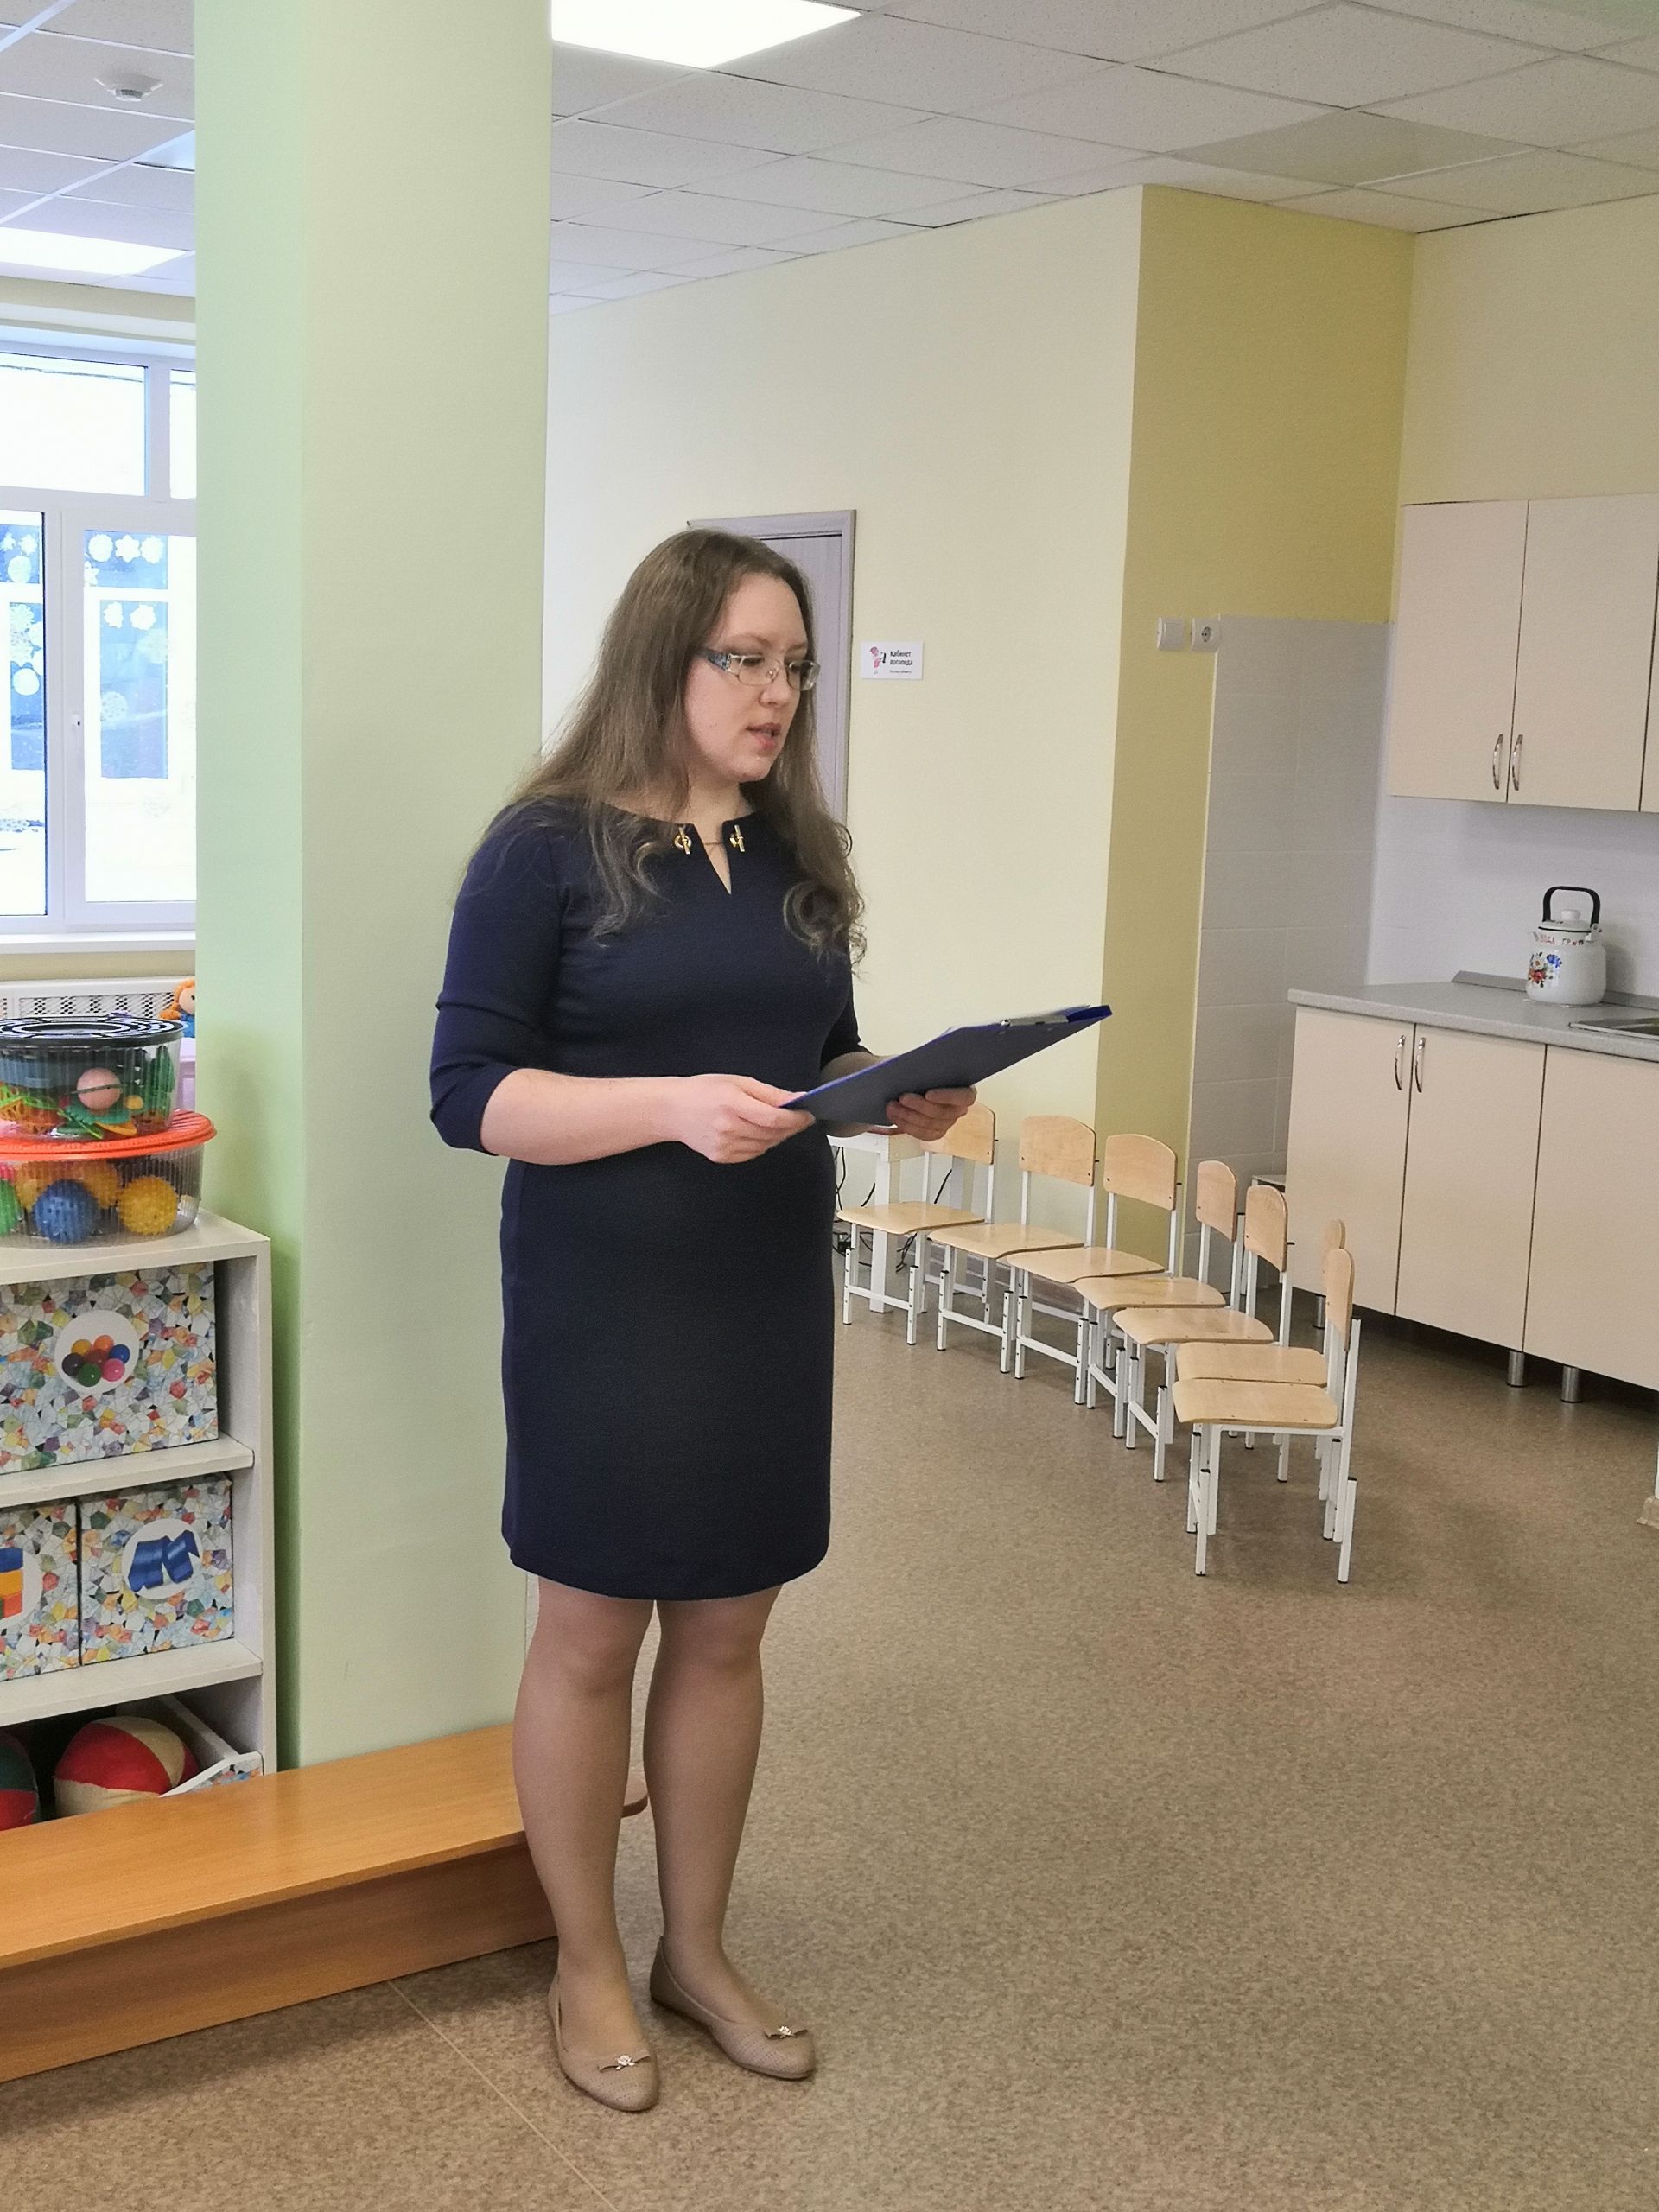 Воспитатели Нижнекамского района обменялись педагогическим опытом + ФОТОРЕПОРТАЖ